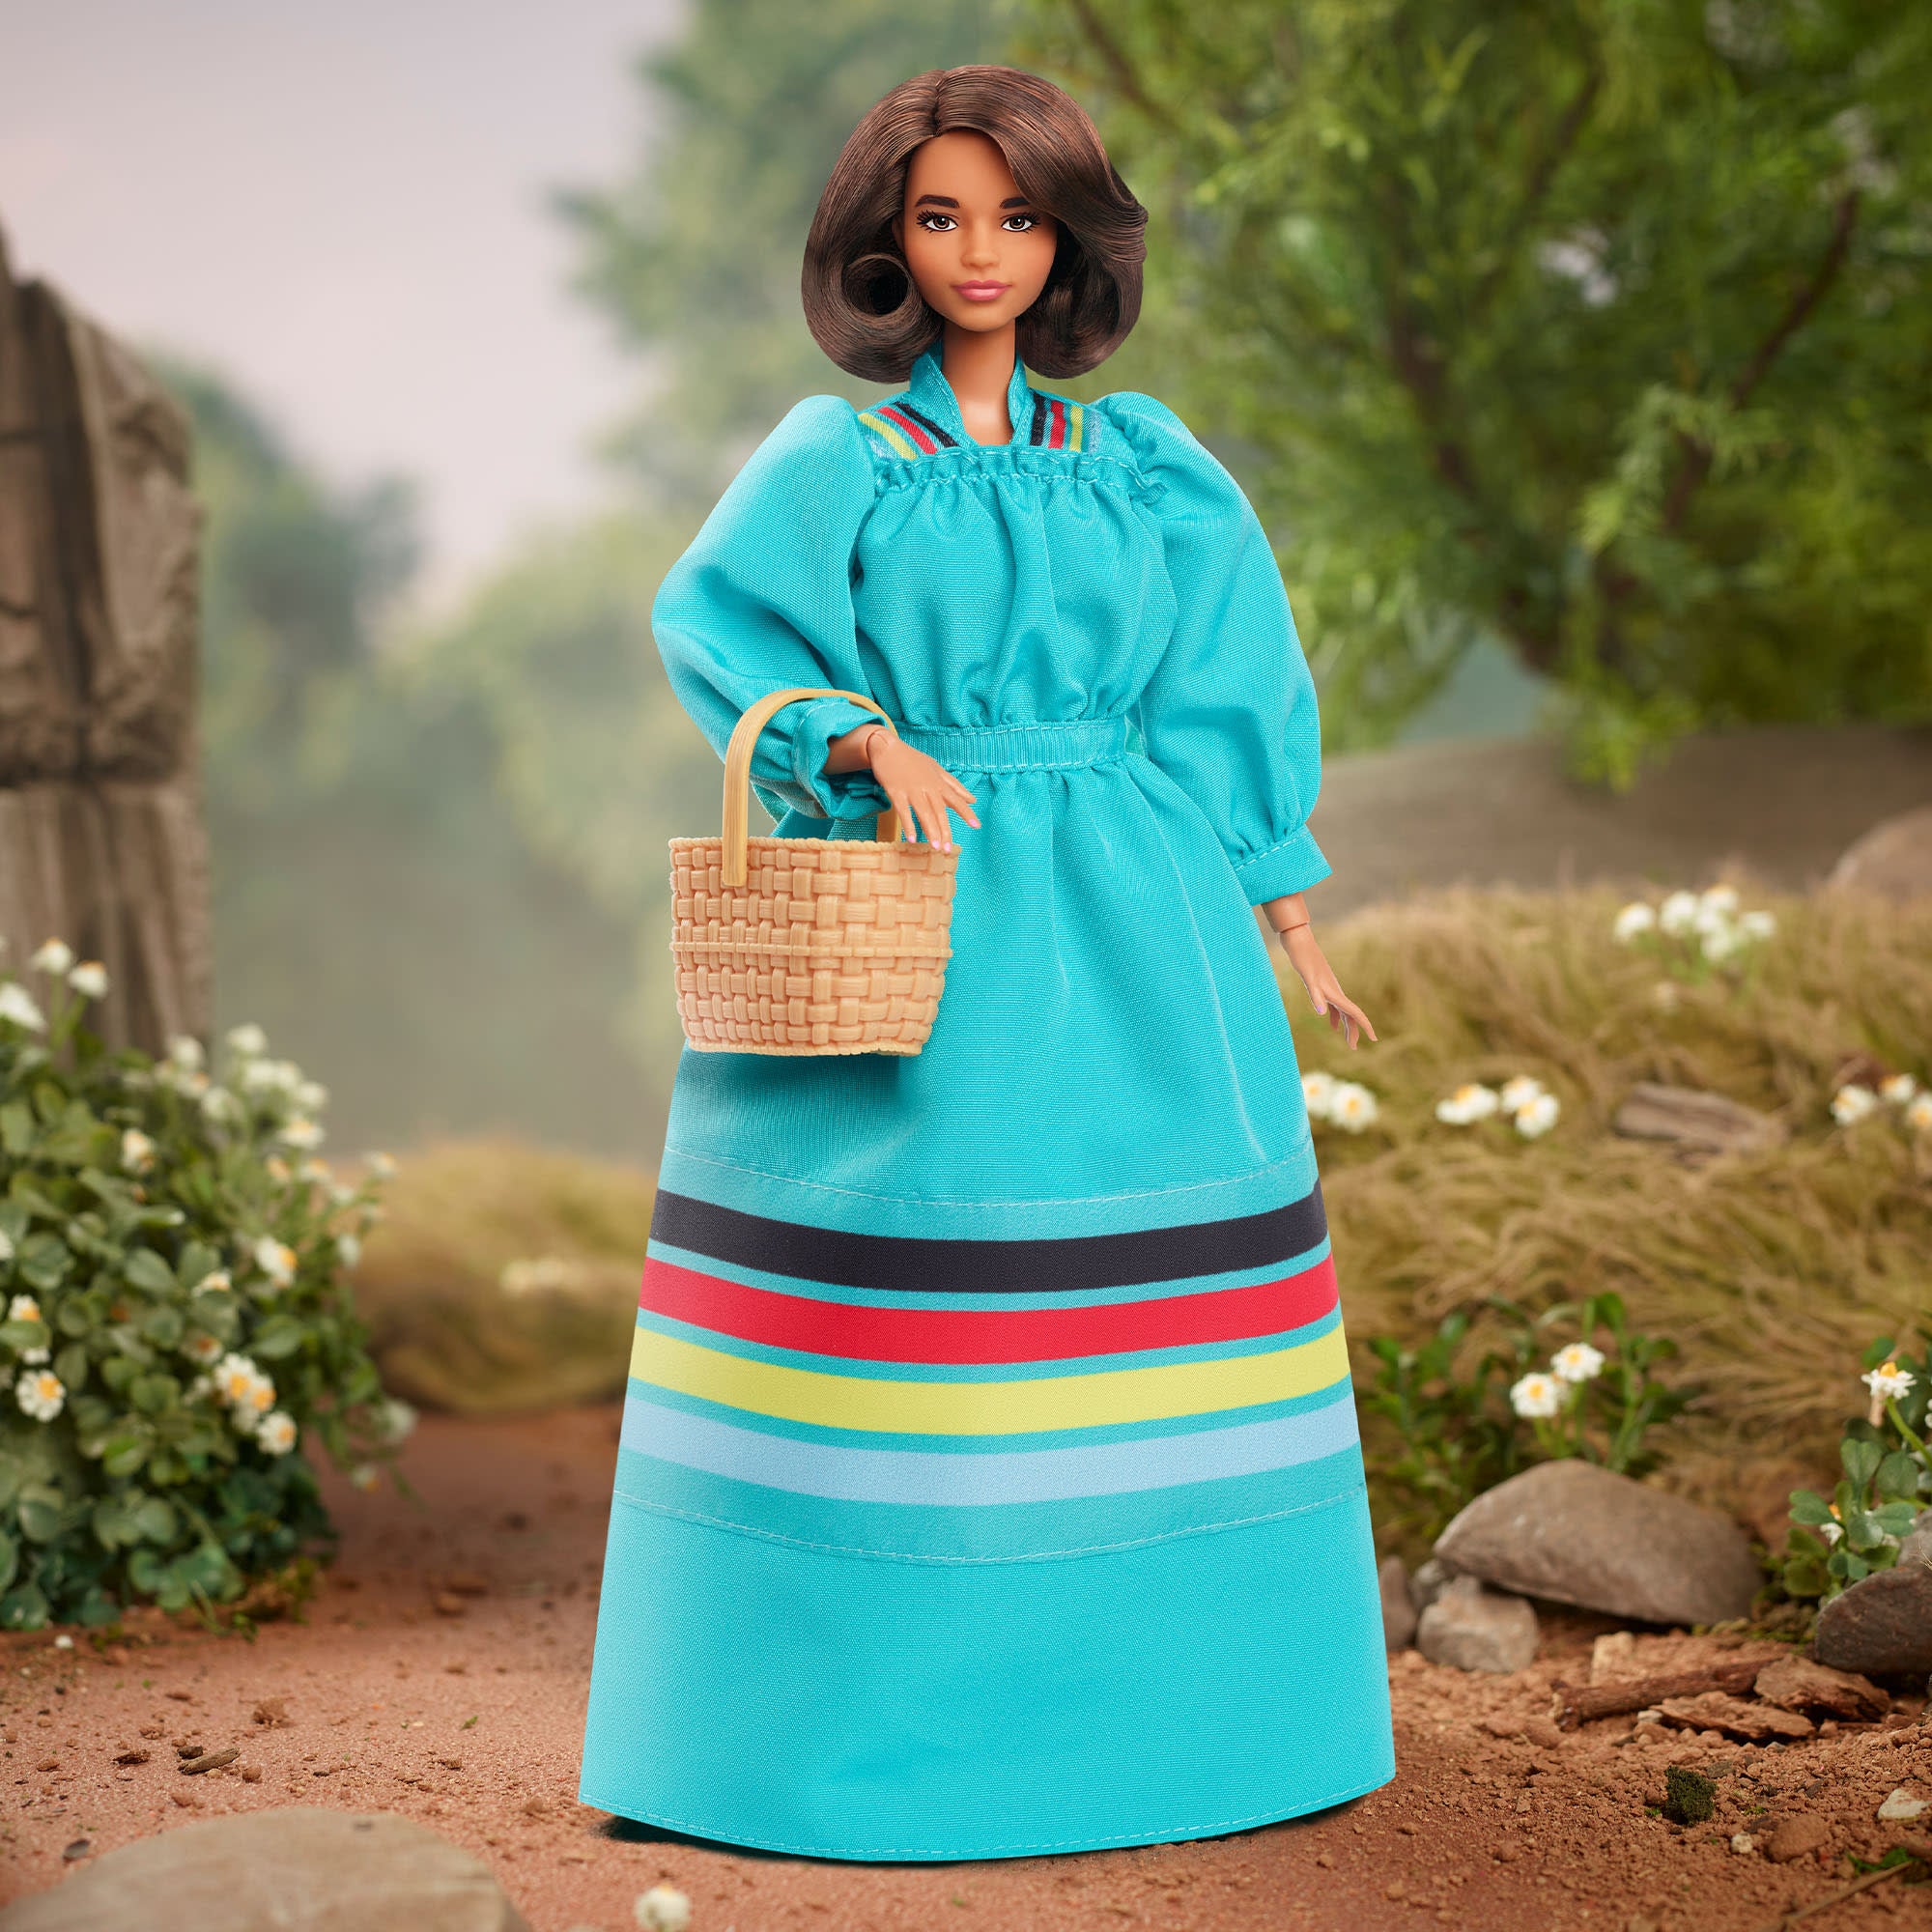 Barbie Inspiring Women Series Dolls – Mattel Creations